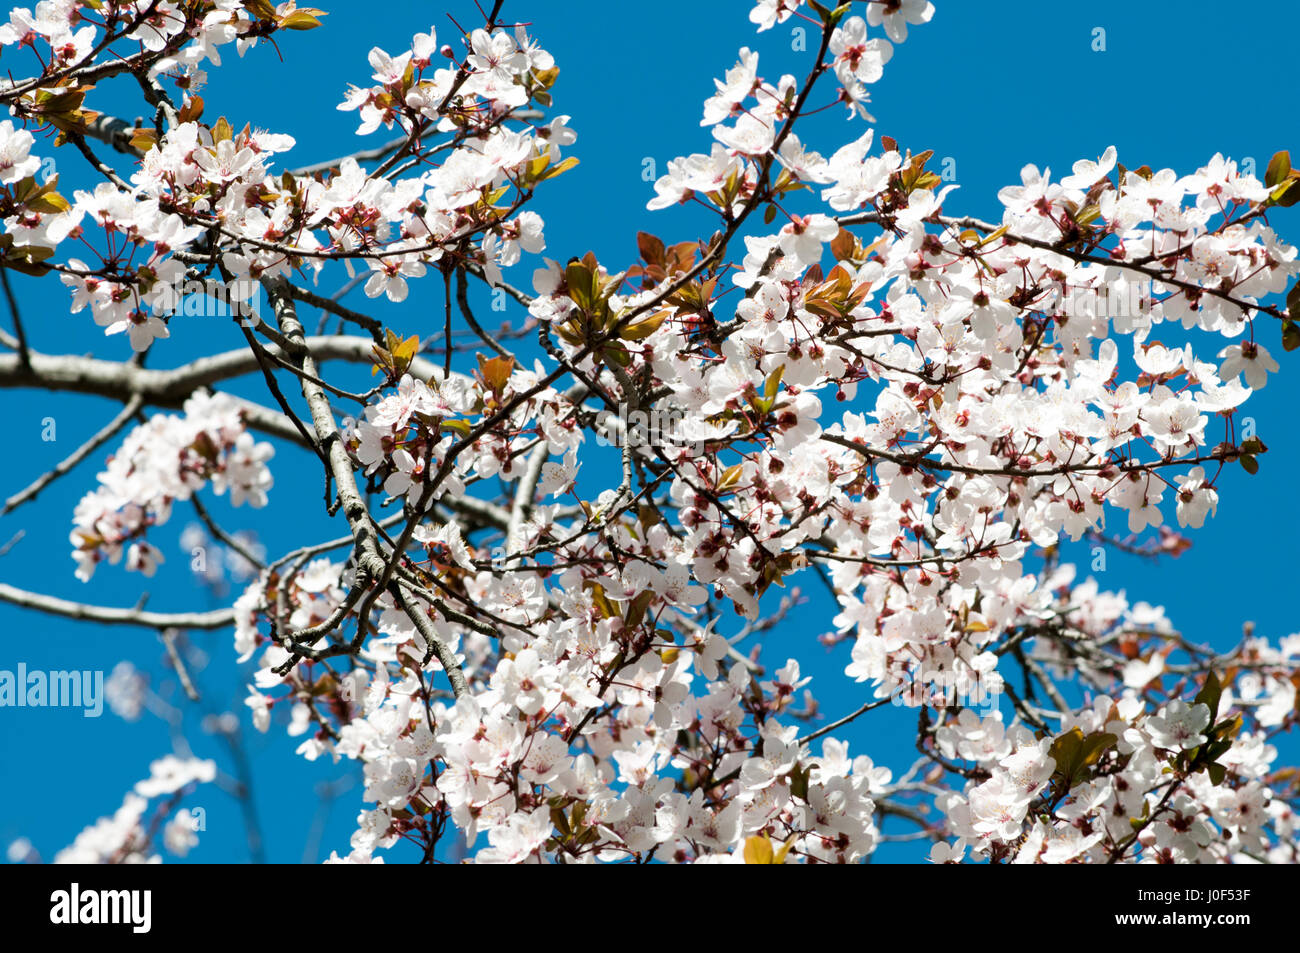 Blooming almendro sobre un fondo de cielo azul. Fotografiado en el Parque del Oeste, Madrid, España Foto de stock